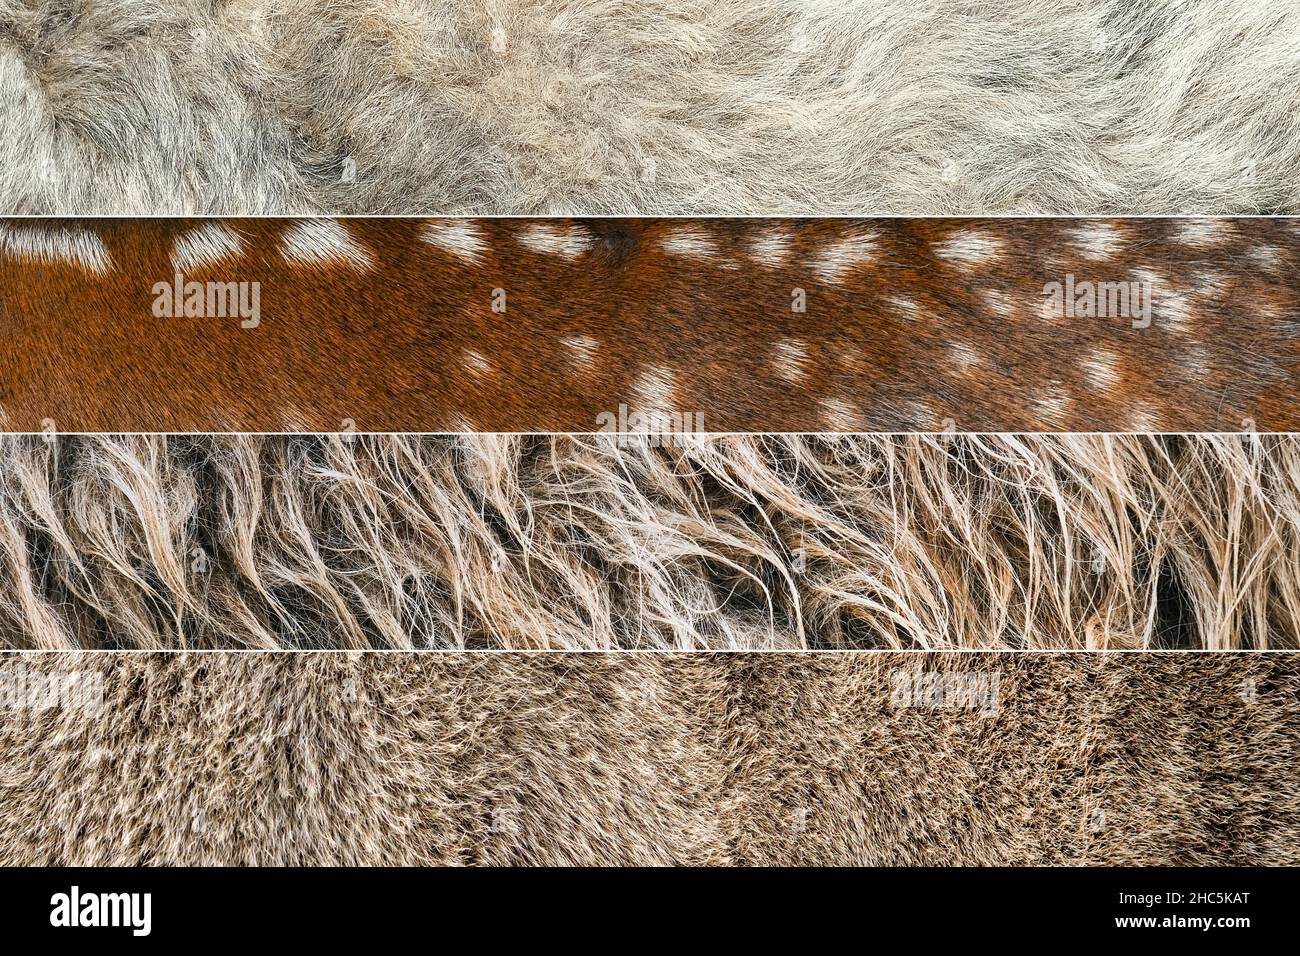 Collage de photos de laine et de fourrure de différents animaux.Cerf, chèvre, mouton fourrure collage Banque D'Images